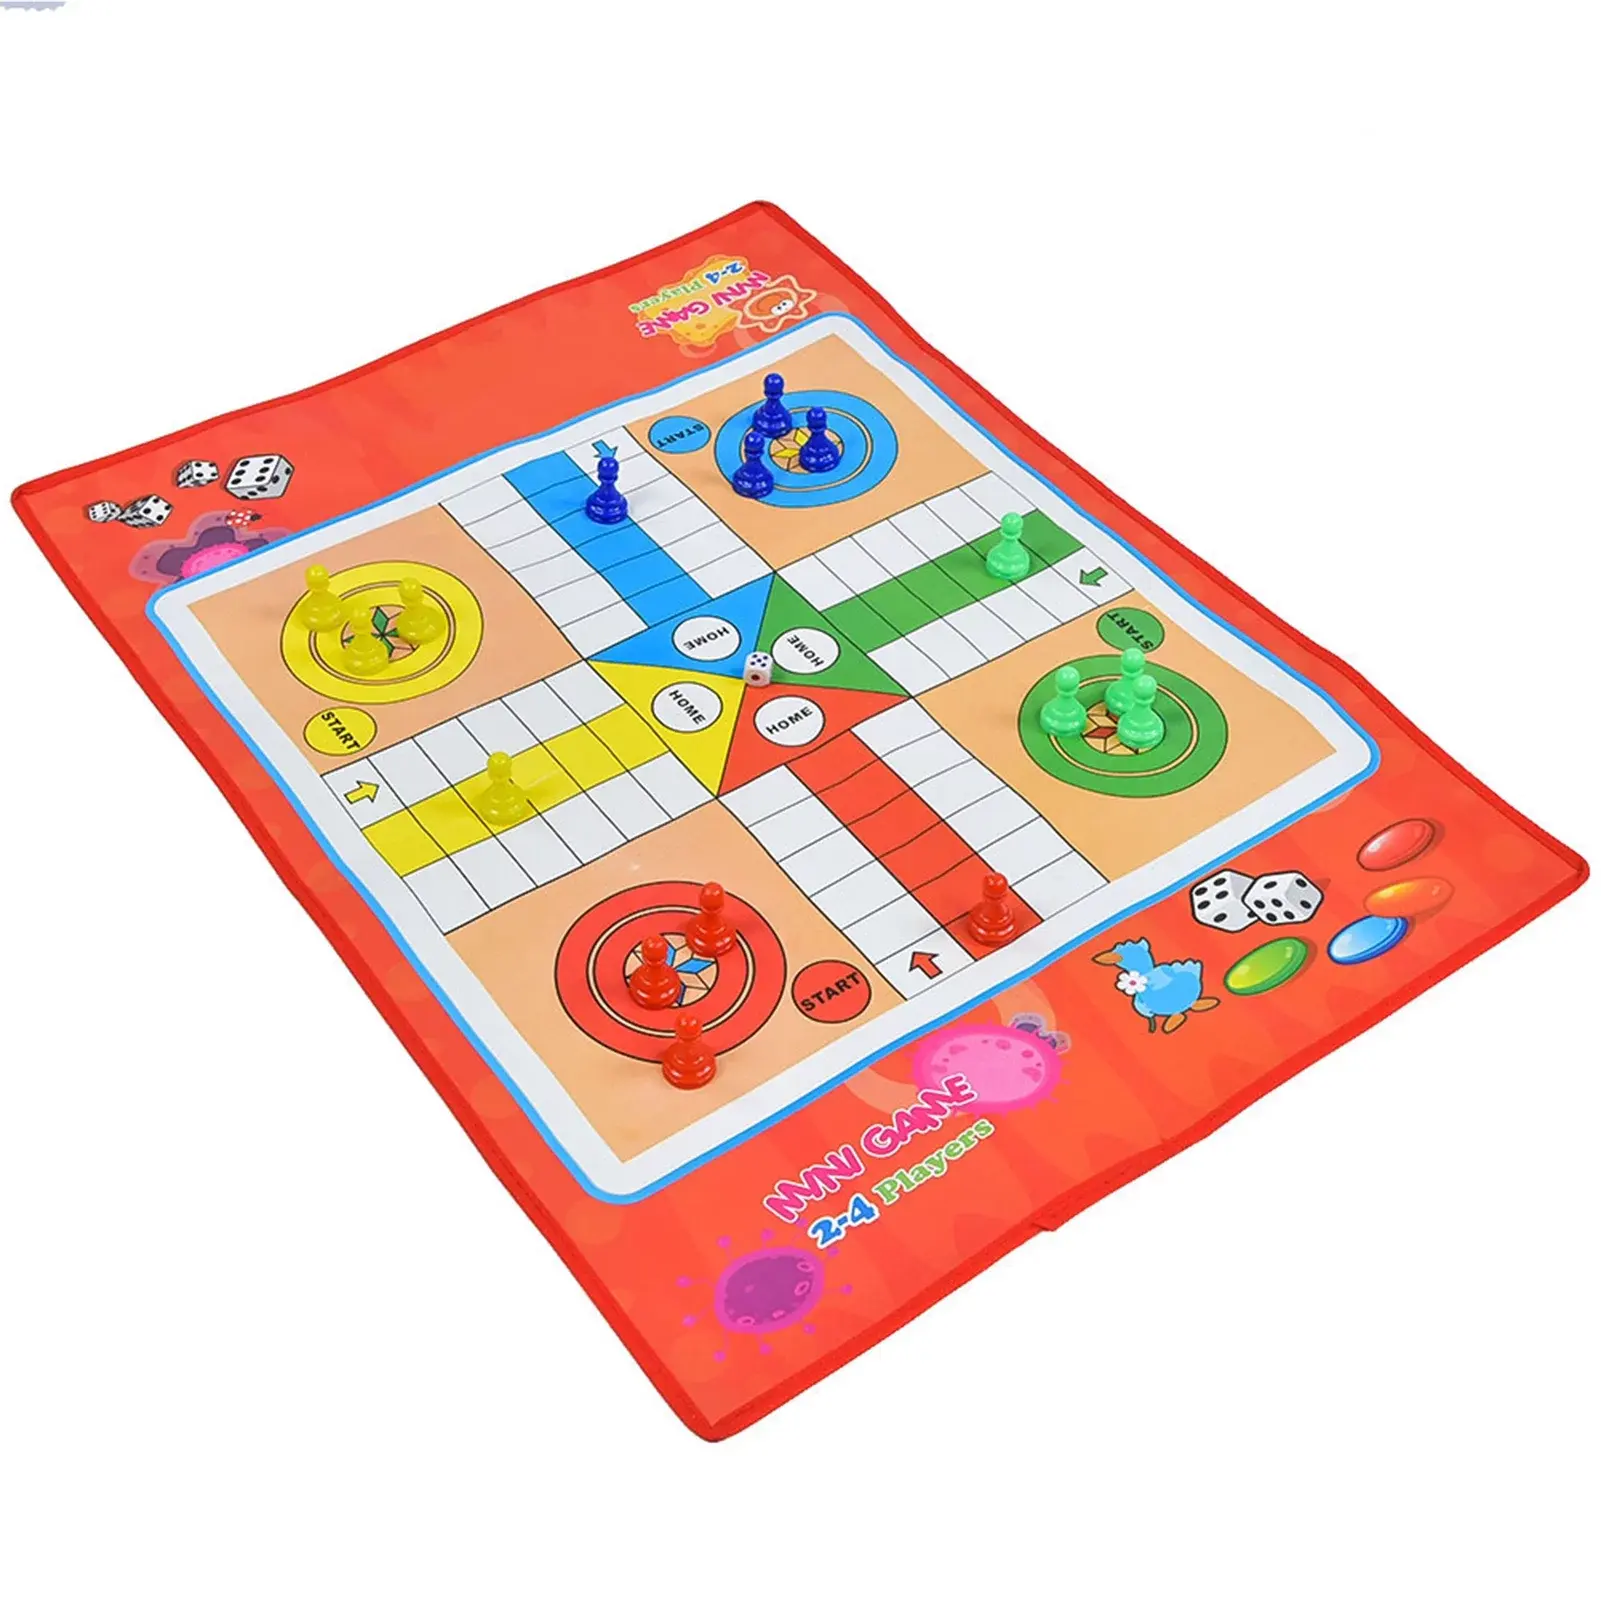 Custom Blank digital board game maker supplier for kids and friends design OEM&ODM